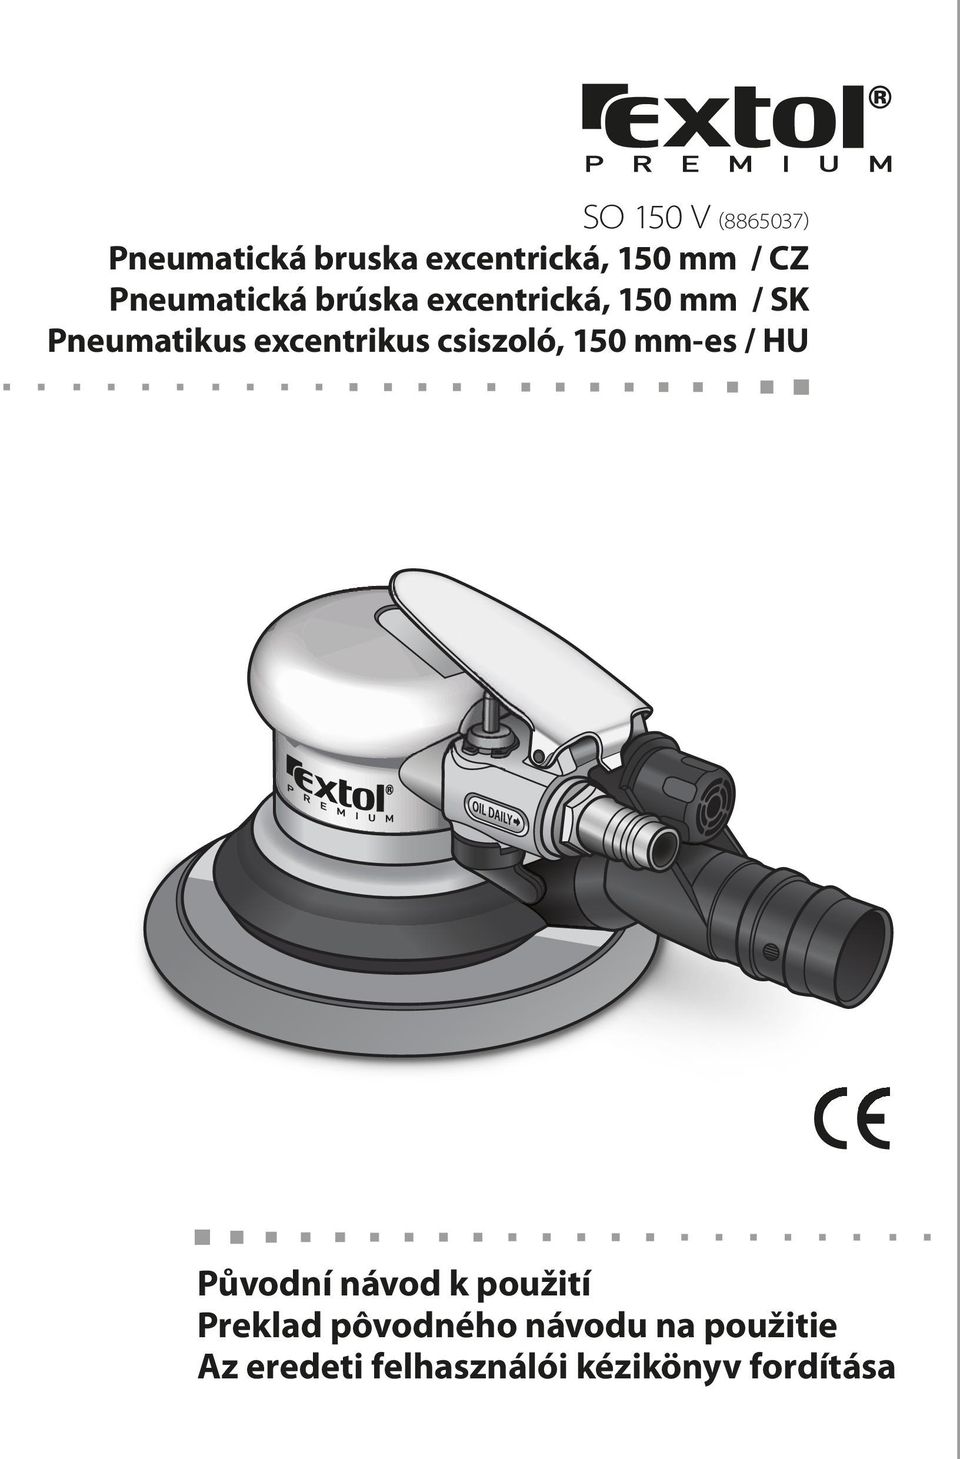 excentrikus csiszoló, 150 mm-es / Původní návod k použití